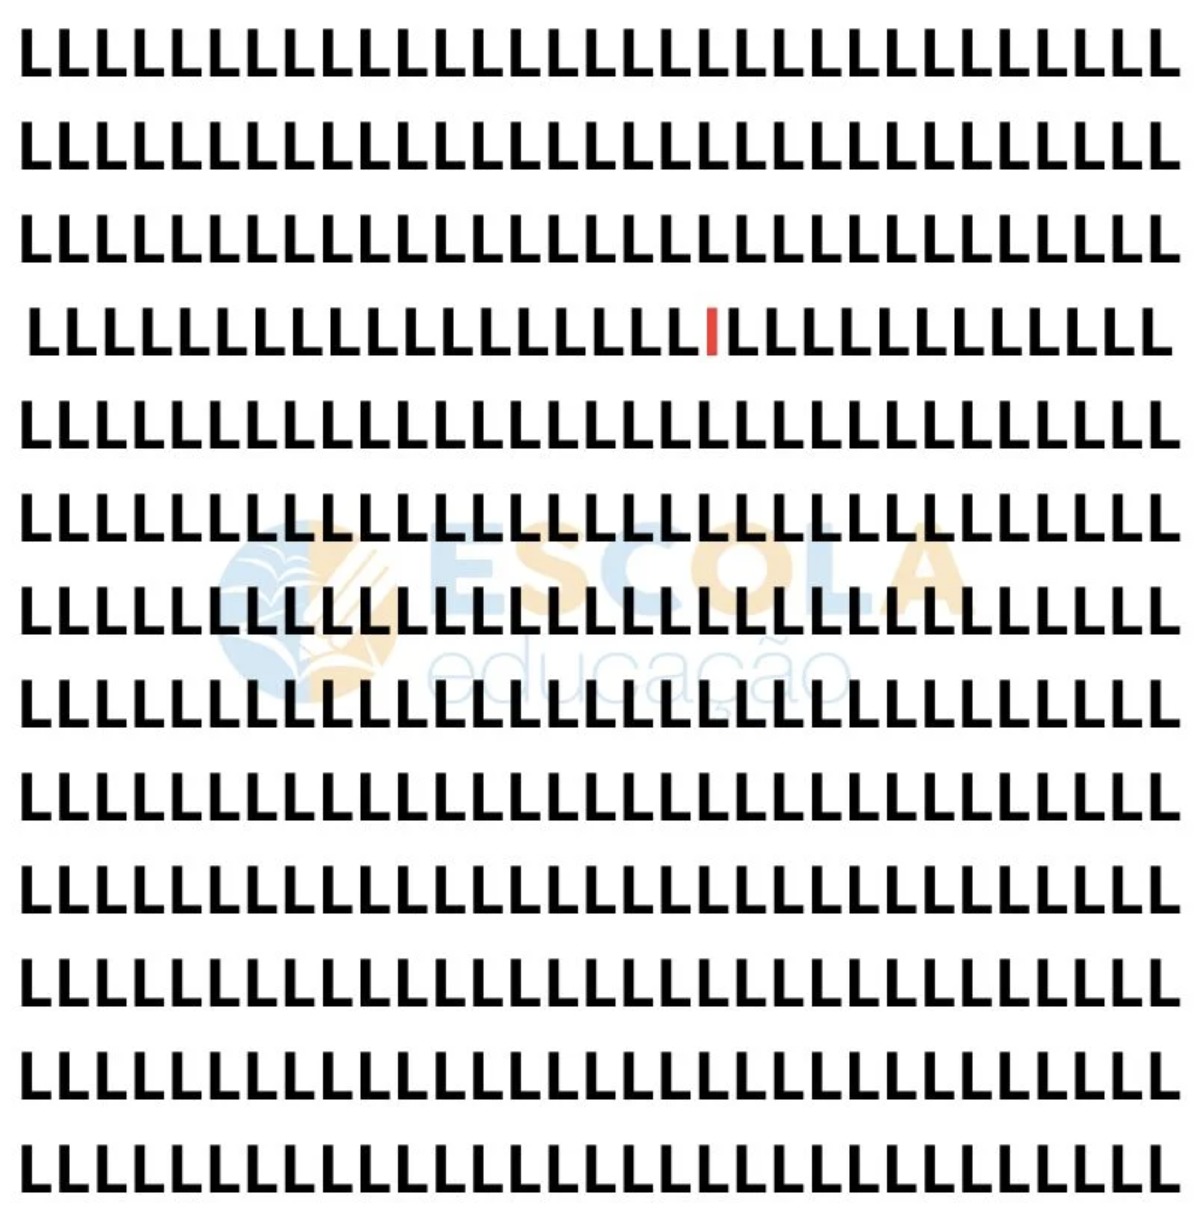 Gabarito - Encontre a letra I escondida na imagem em poucos segundos. (Imagem: Escola Educação)